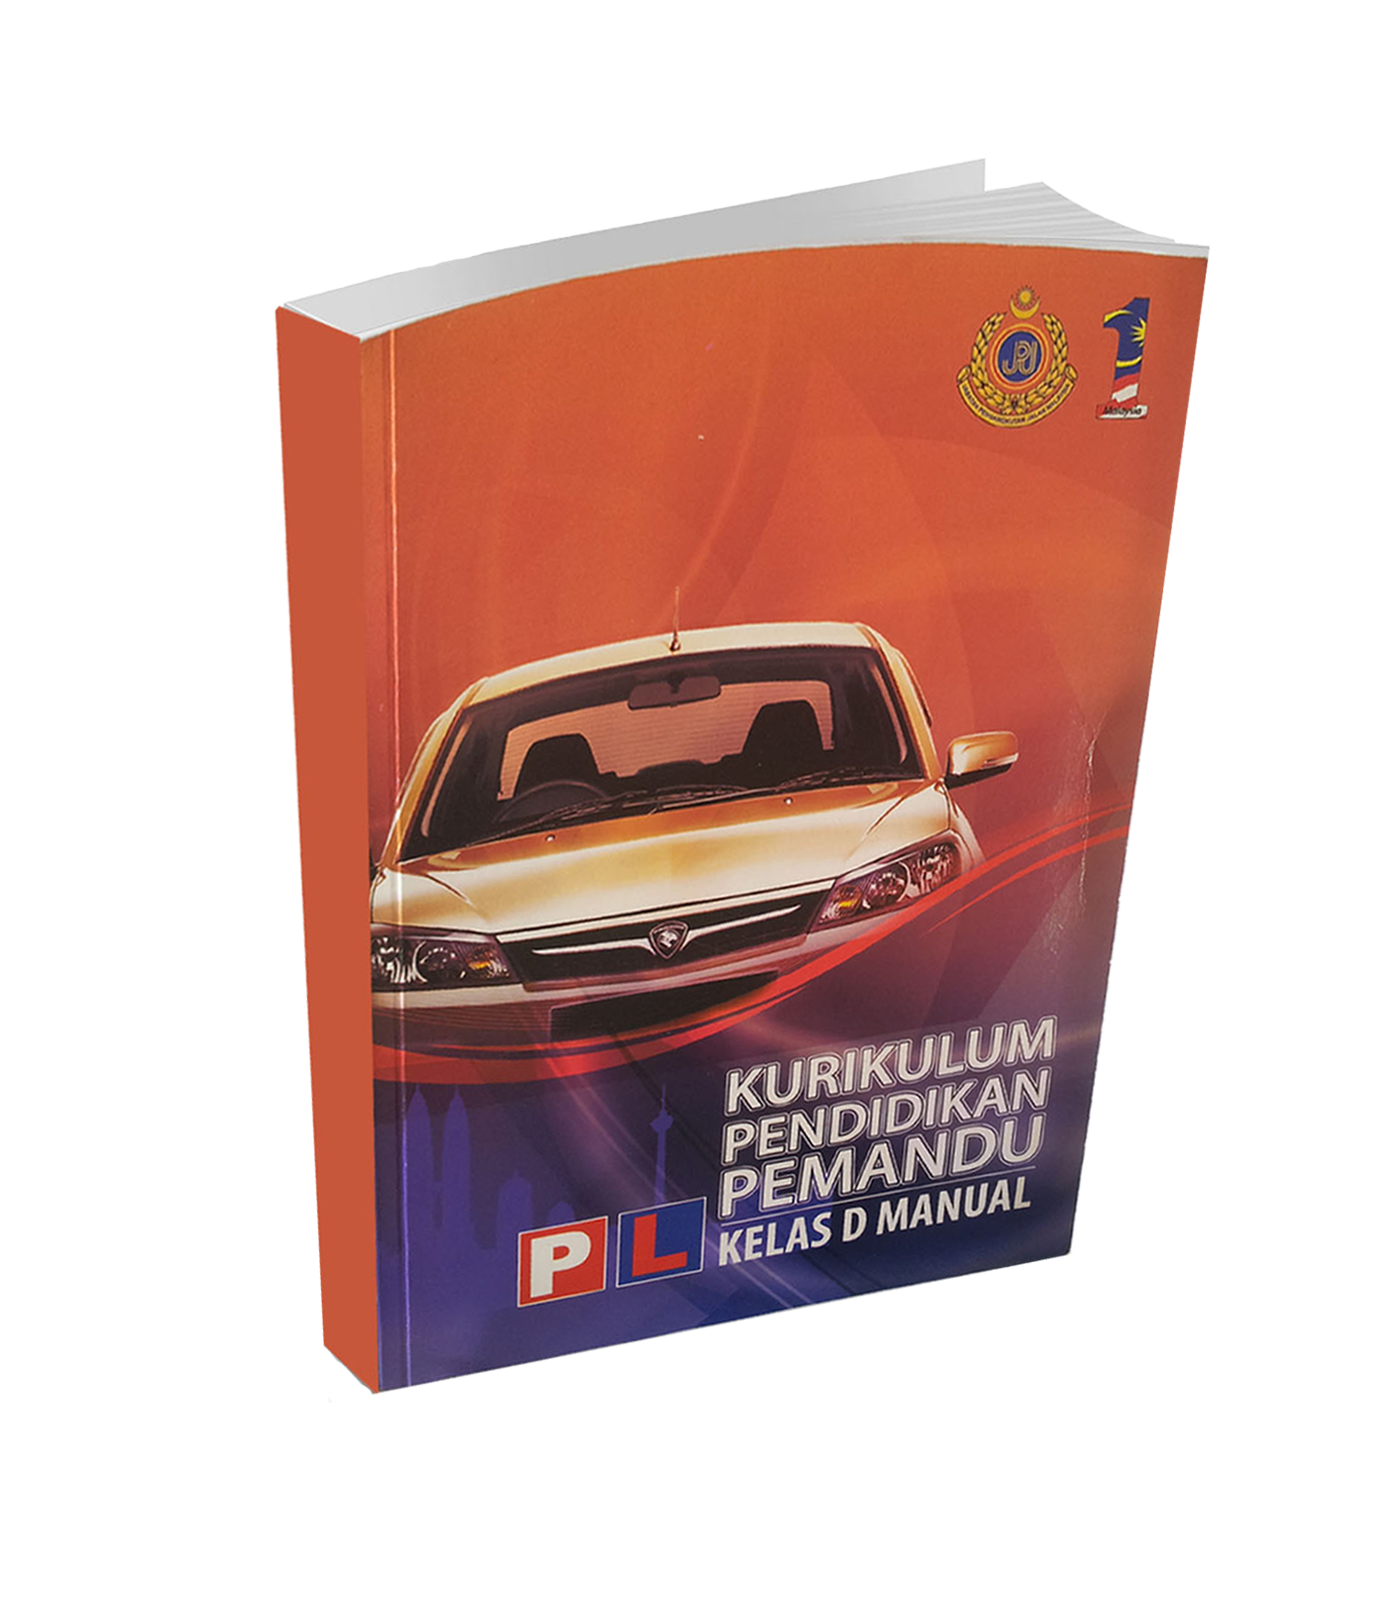 Buku KPP